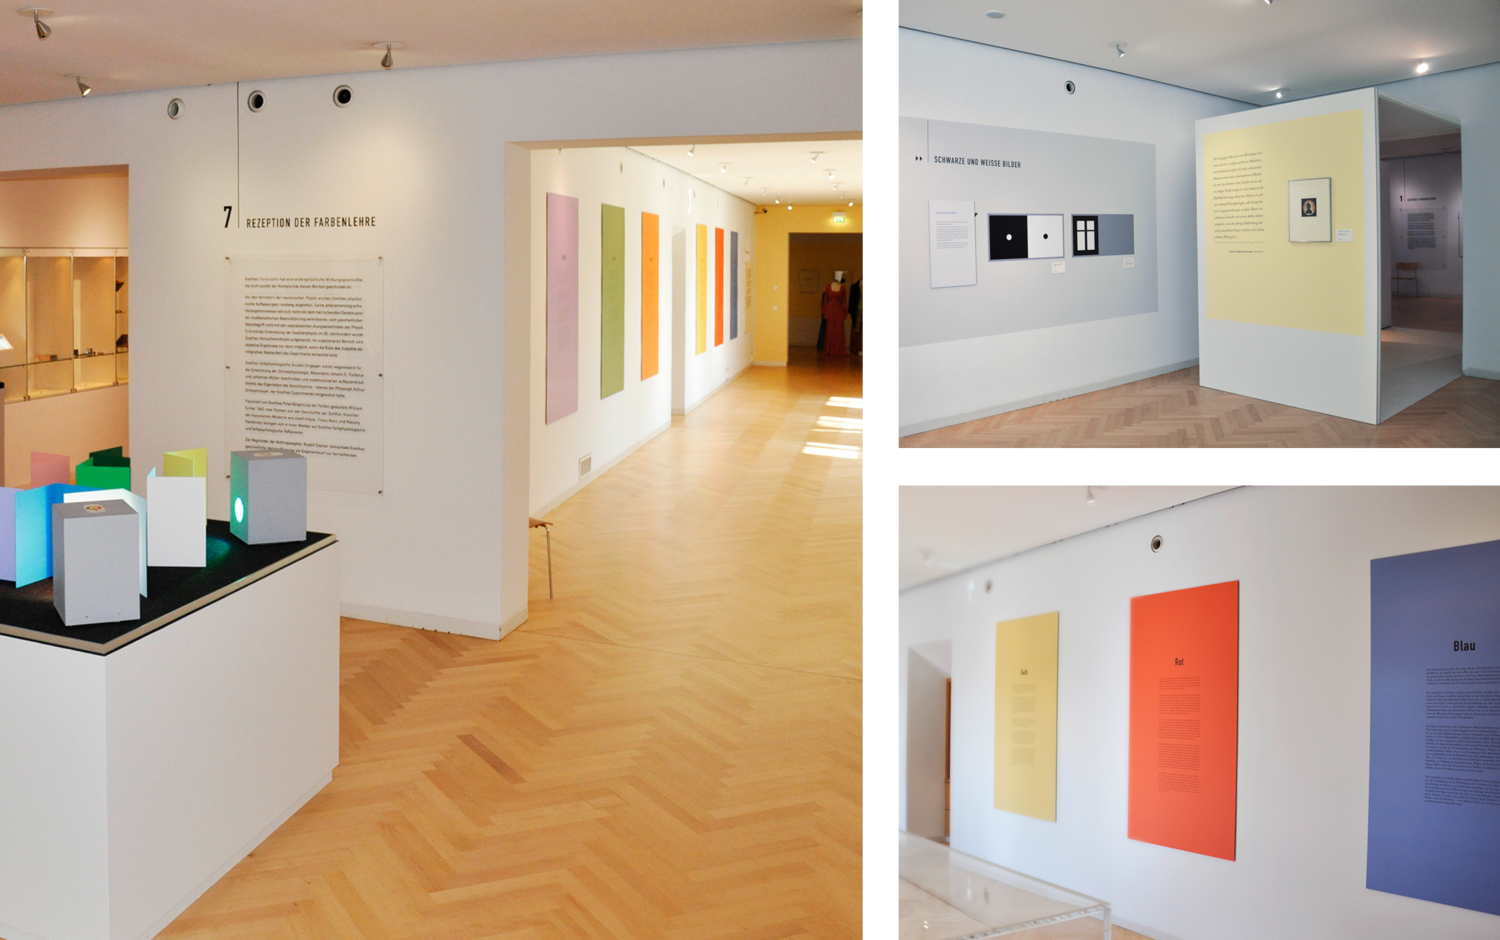 Blick in 3 Räume der Ausstellung  (© Papenfuss | Atelier)